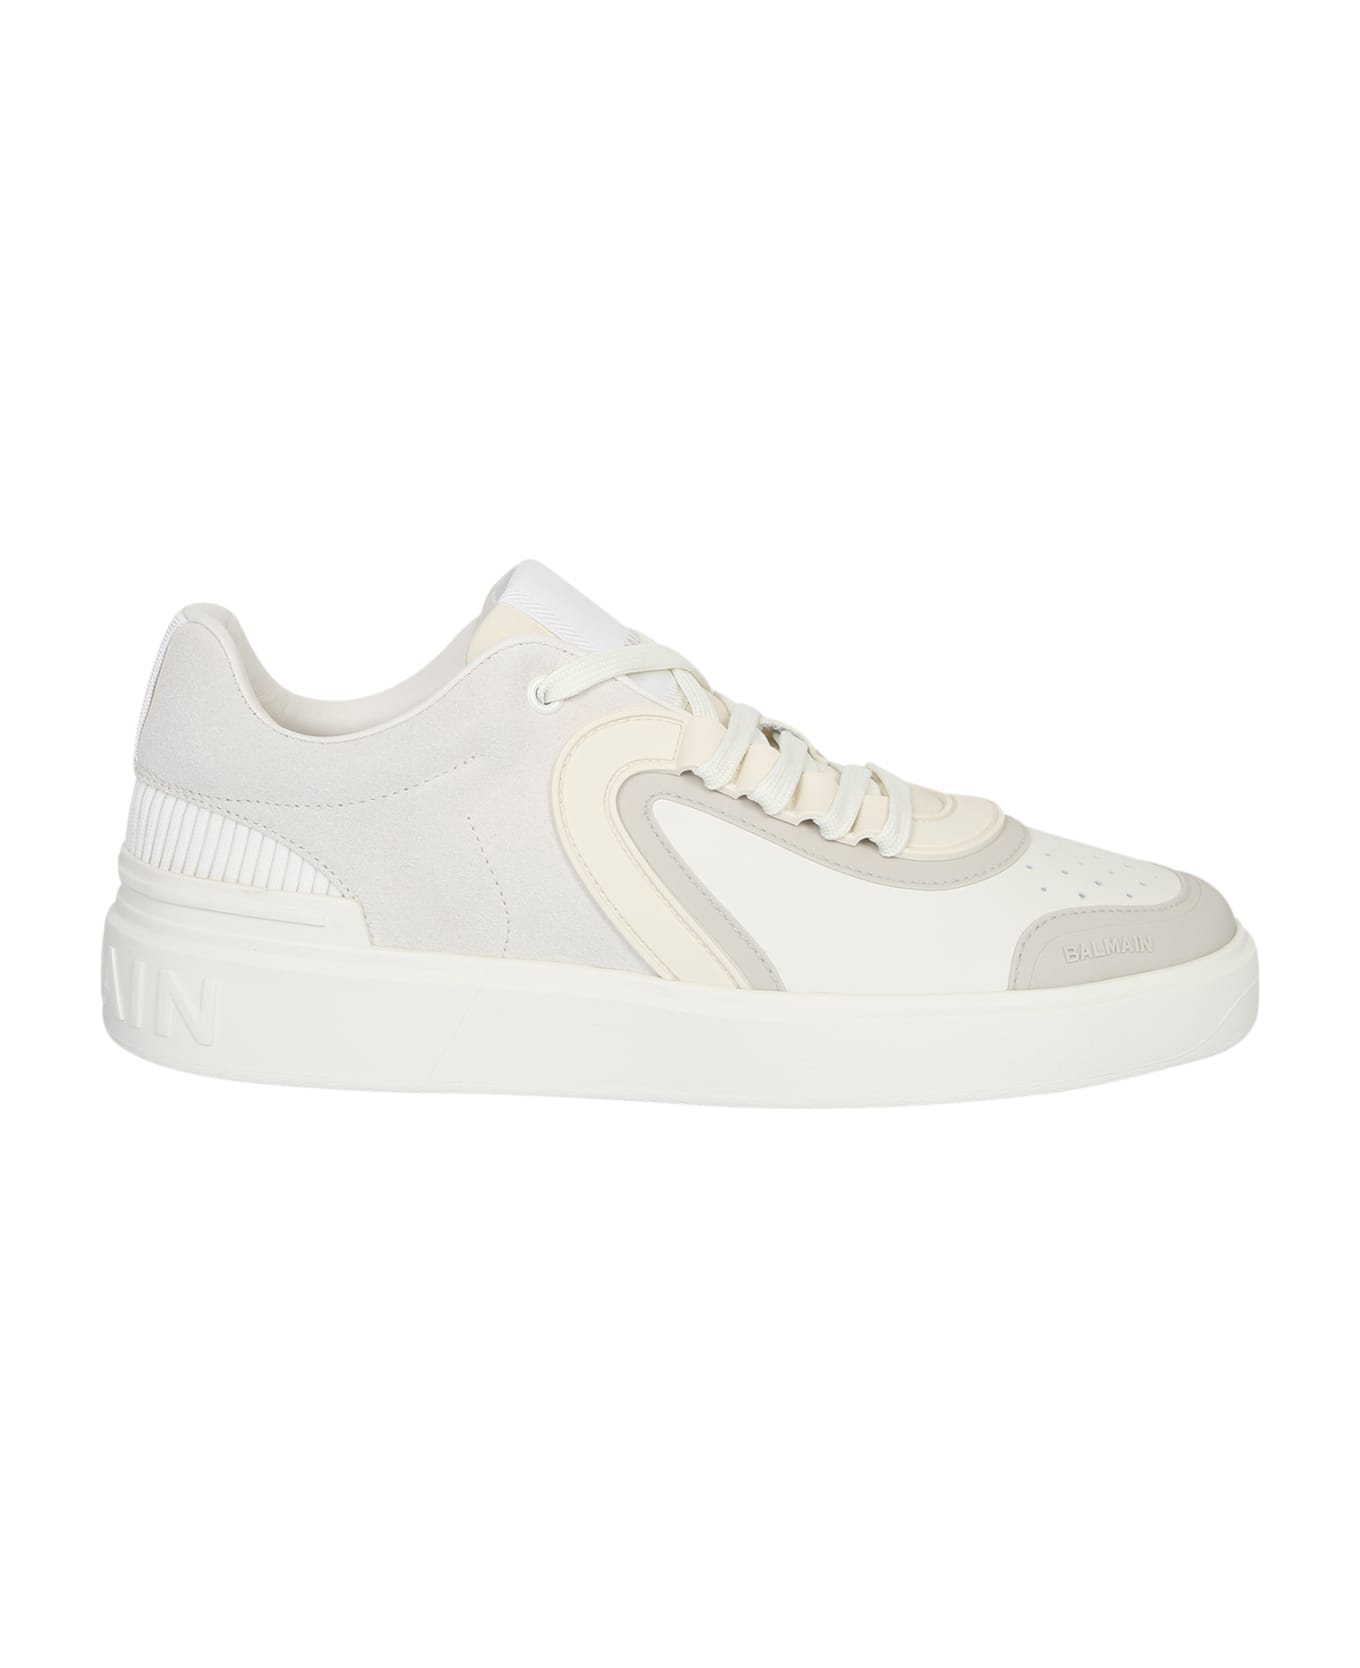 Balmain Leather Sneakers - White